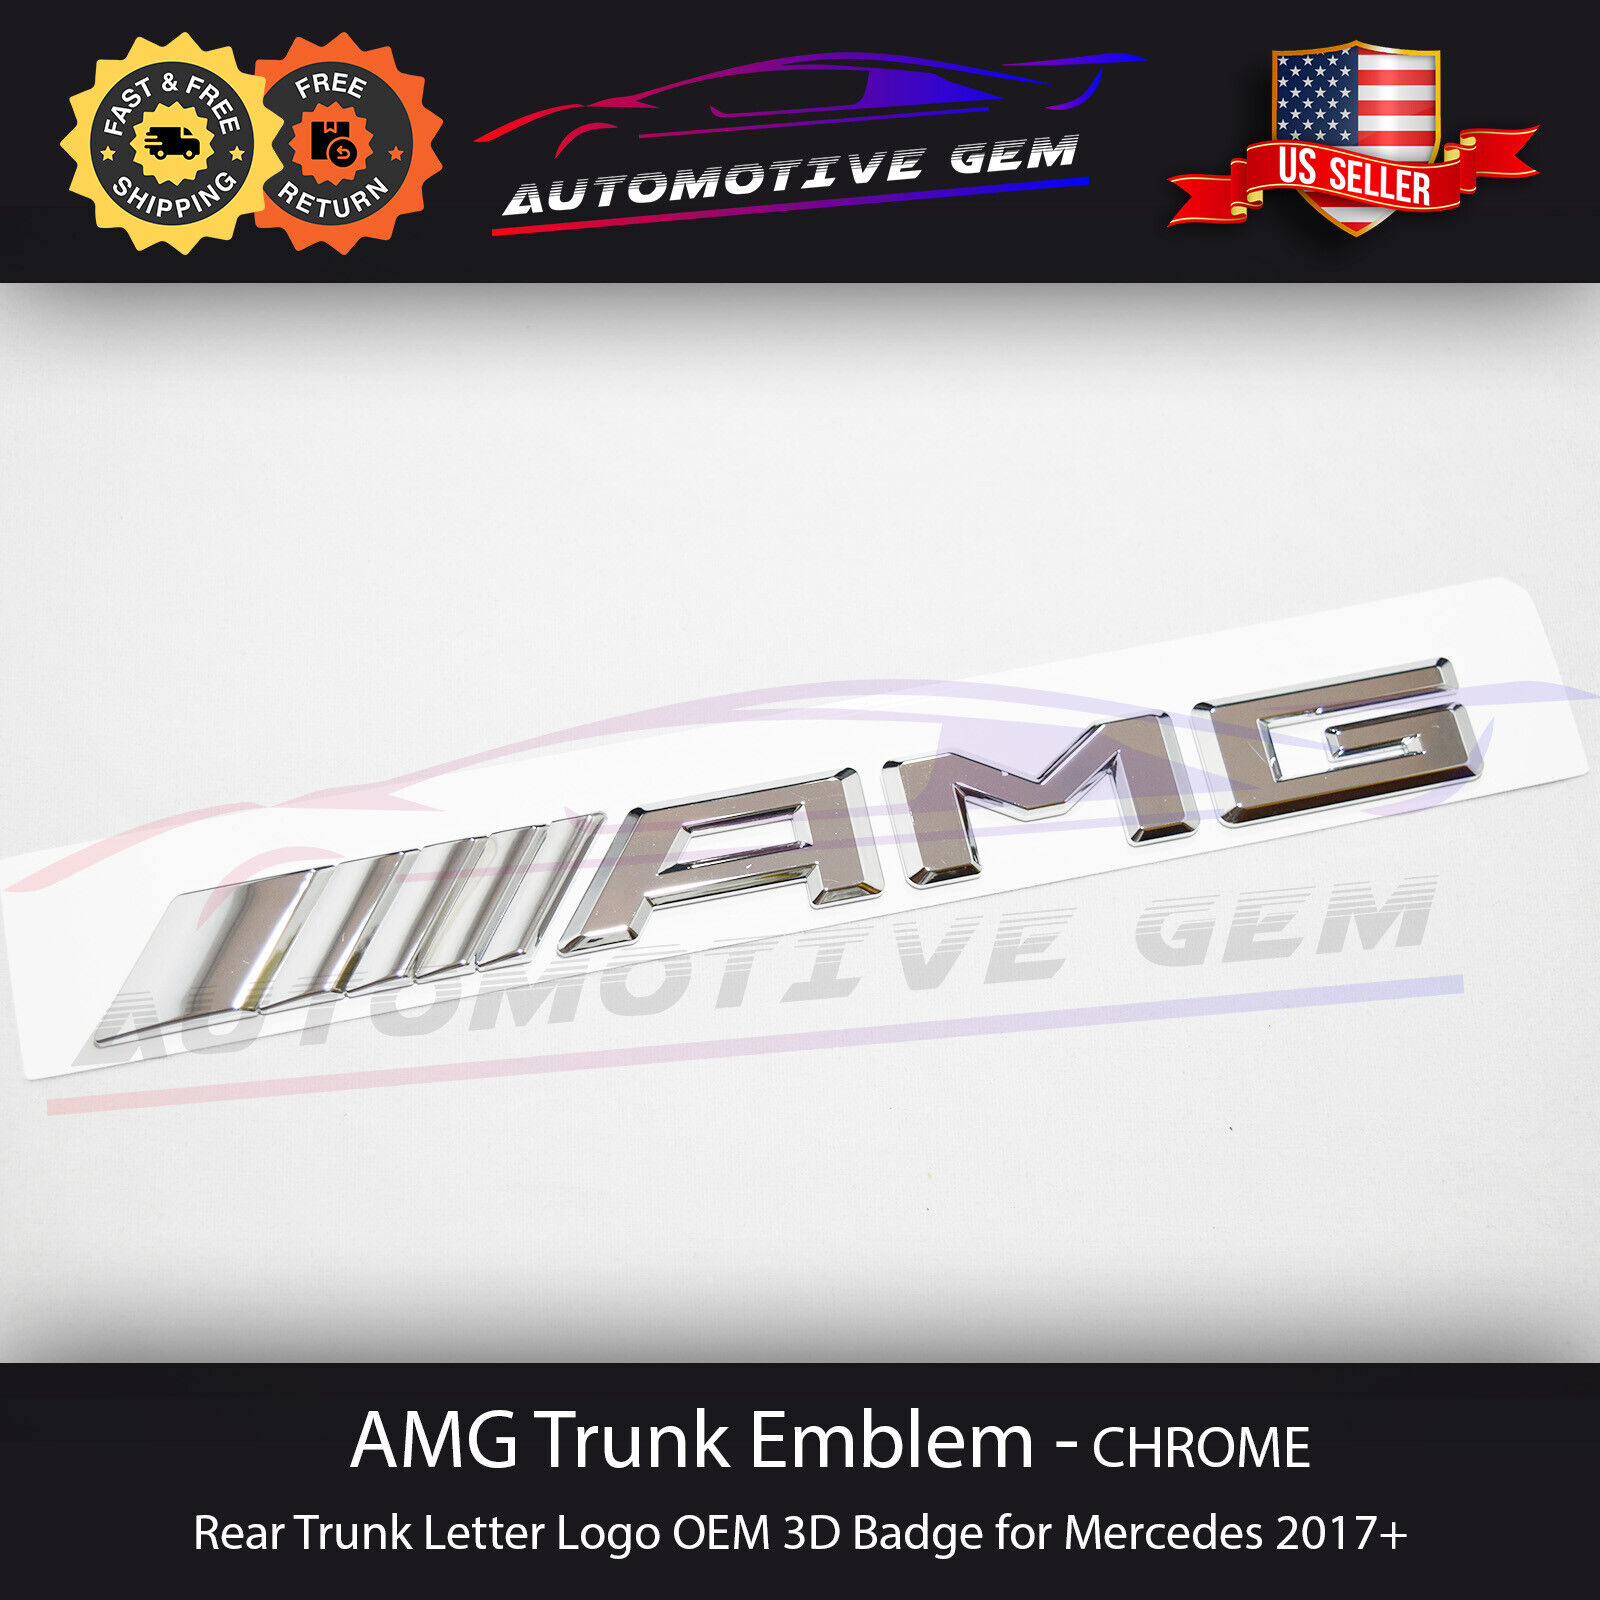 AMG Emblem Chrome Rear Trunk Letter Logo OEM 3D Badge for Mercedes 2017+